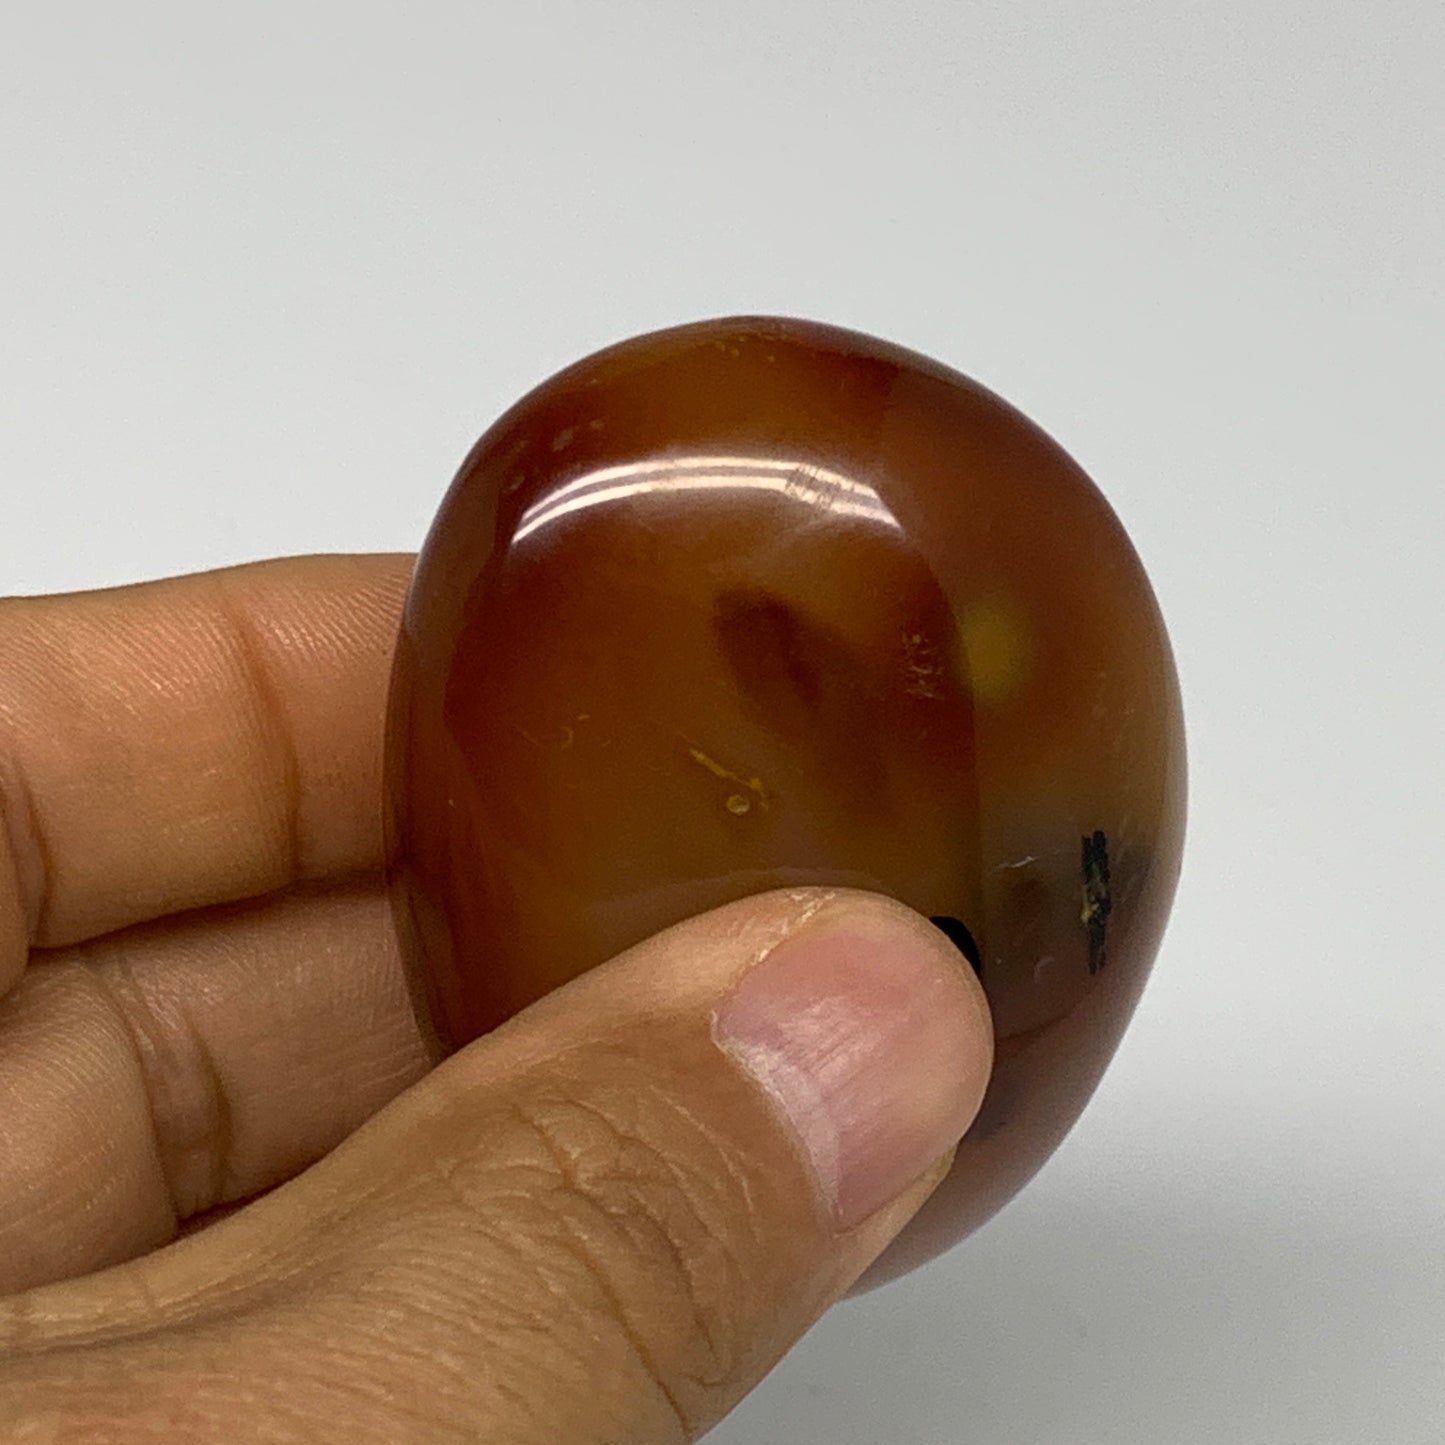 100g, 2.3"x1.8"x1.1", Red Carnelian Palm-Stone Gem Crystal Polished, B28467